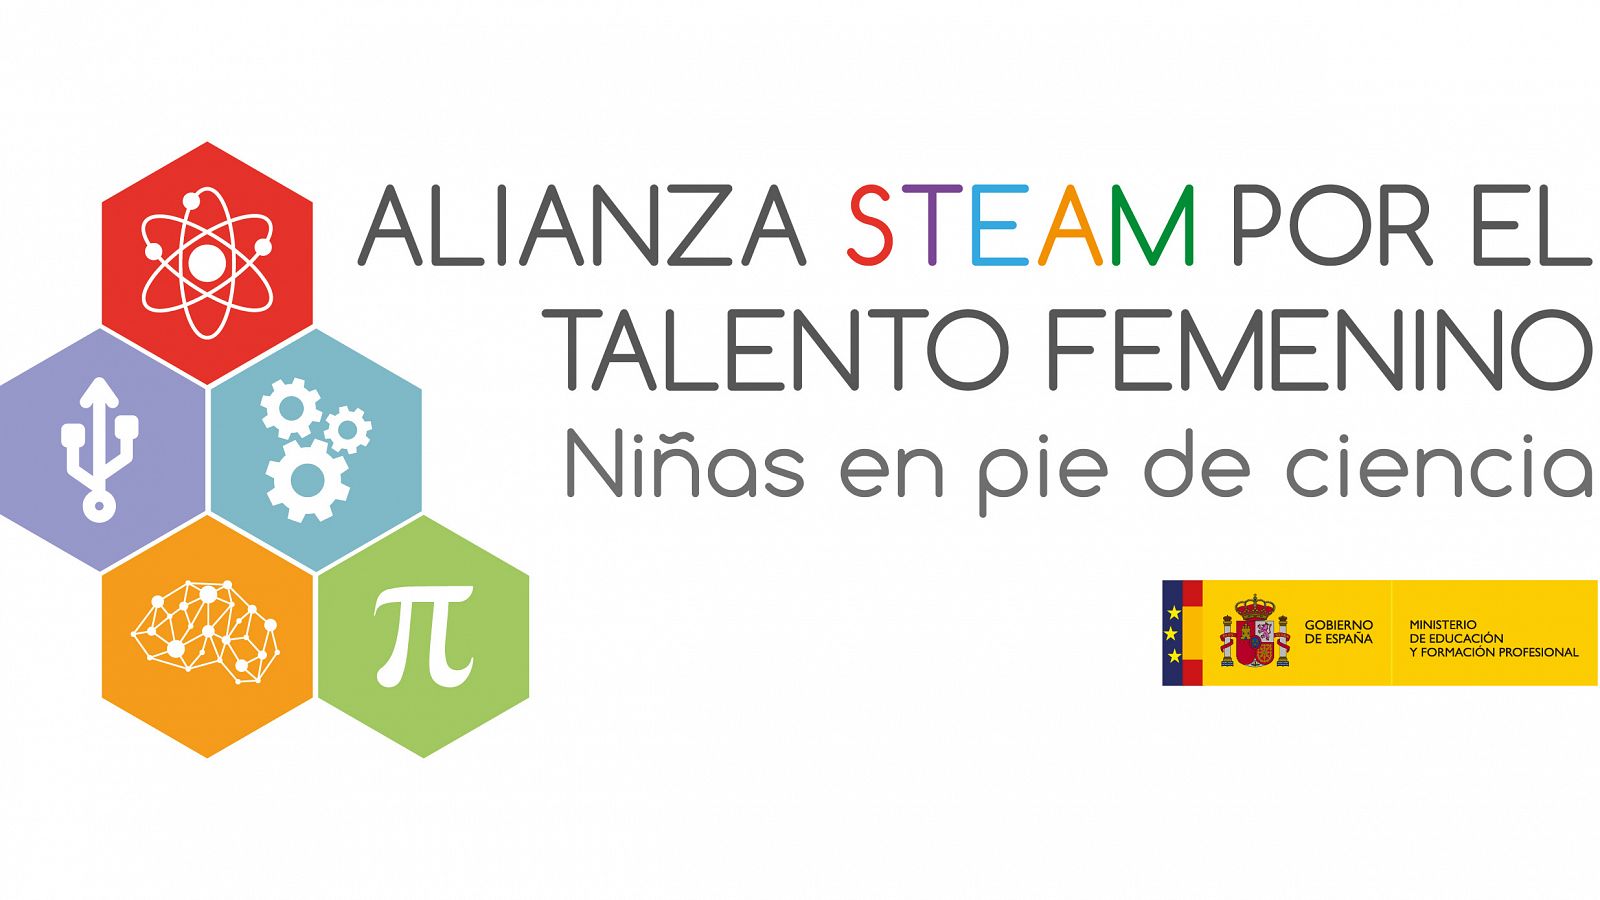 La Alianza se presentará el próximo jueves 11 de febrero, coincidiendo con el Día Internacional de la Mujer y la Niña en la Ciencia